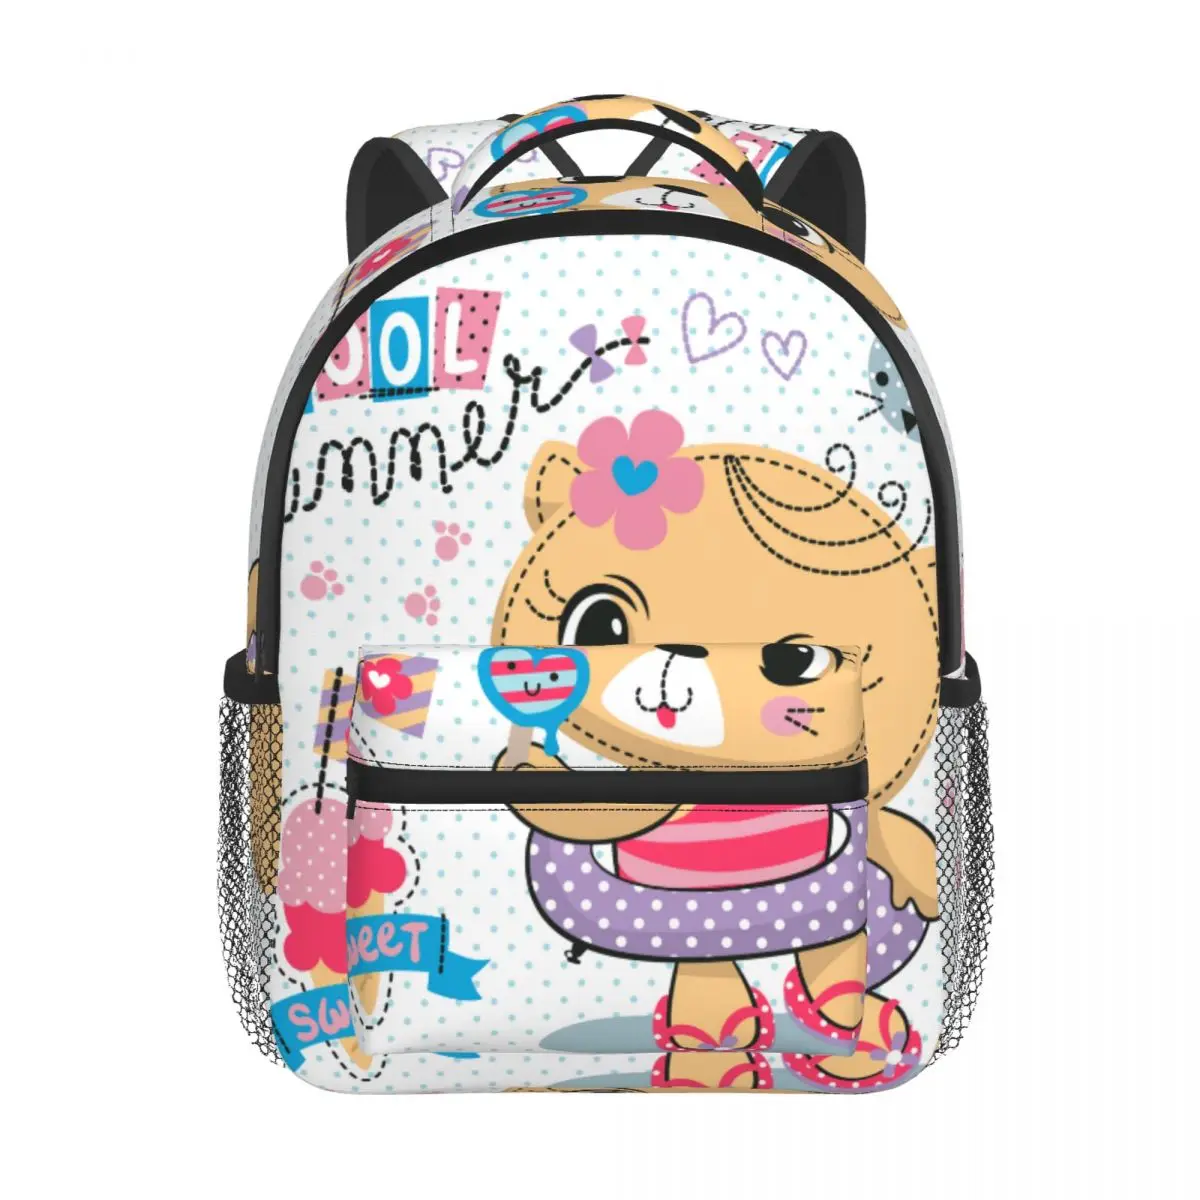 Cartoon Cat In Rubber Ring Baby Backpack Kindergarten Schoolbag Kids Children School Bag